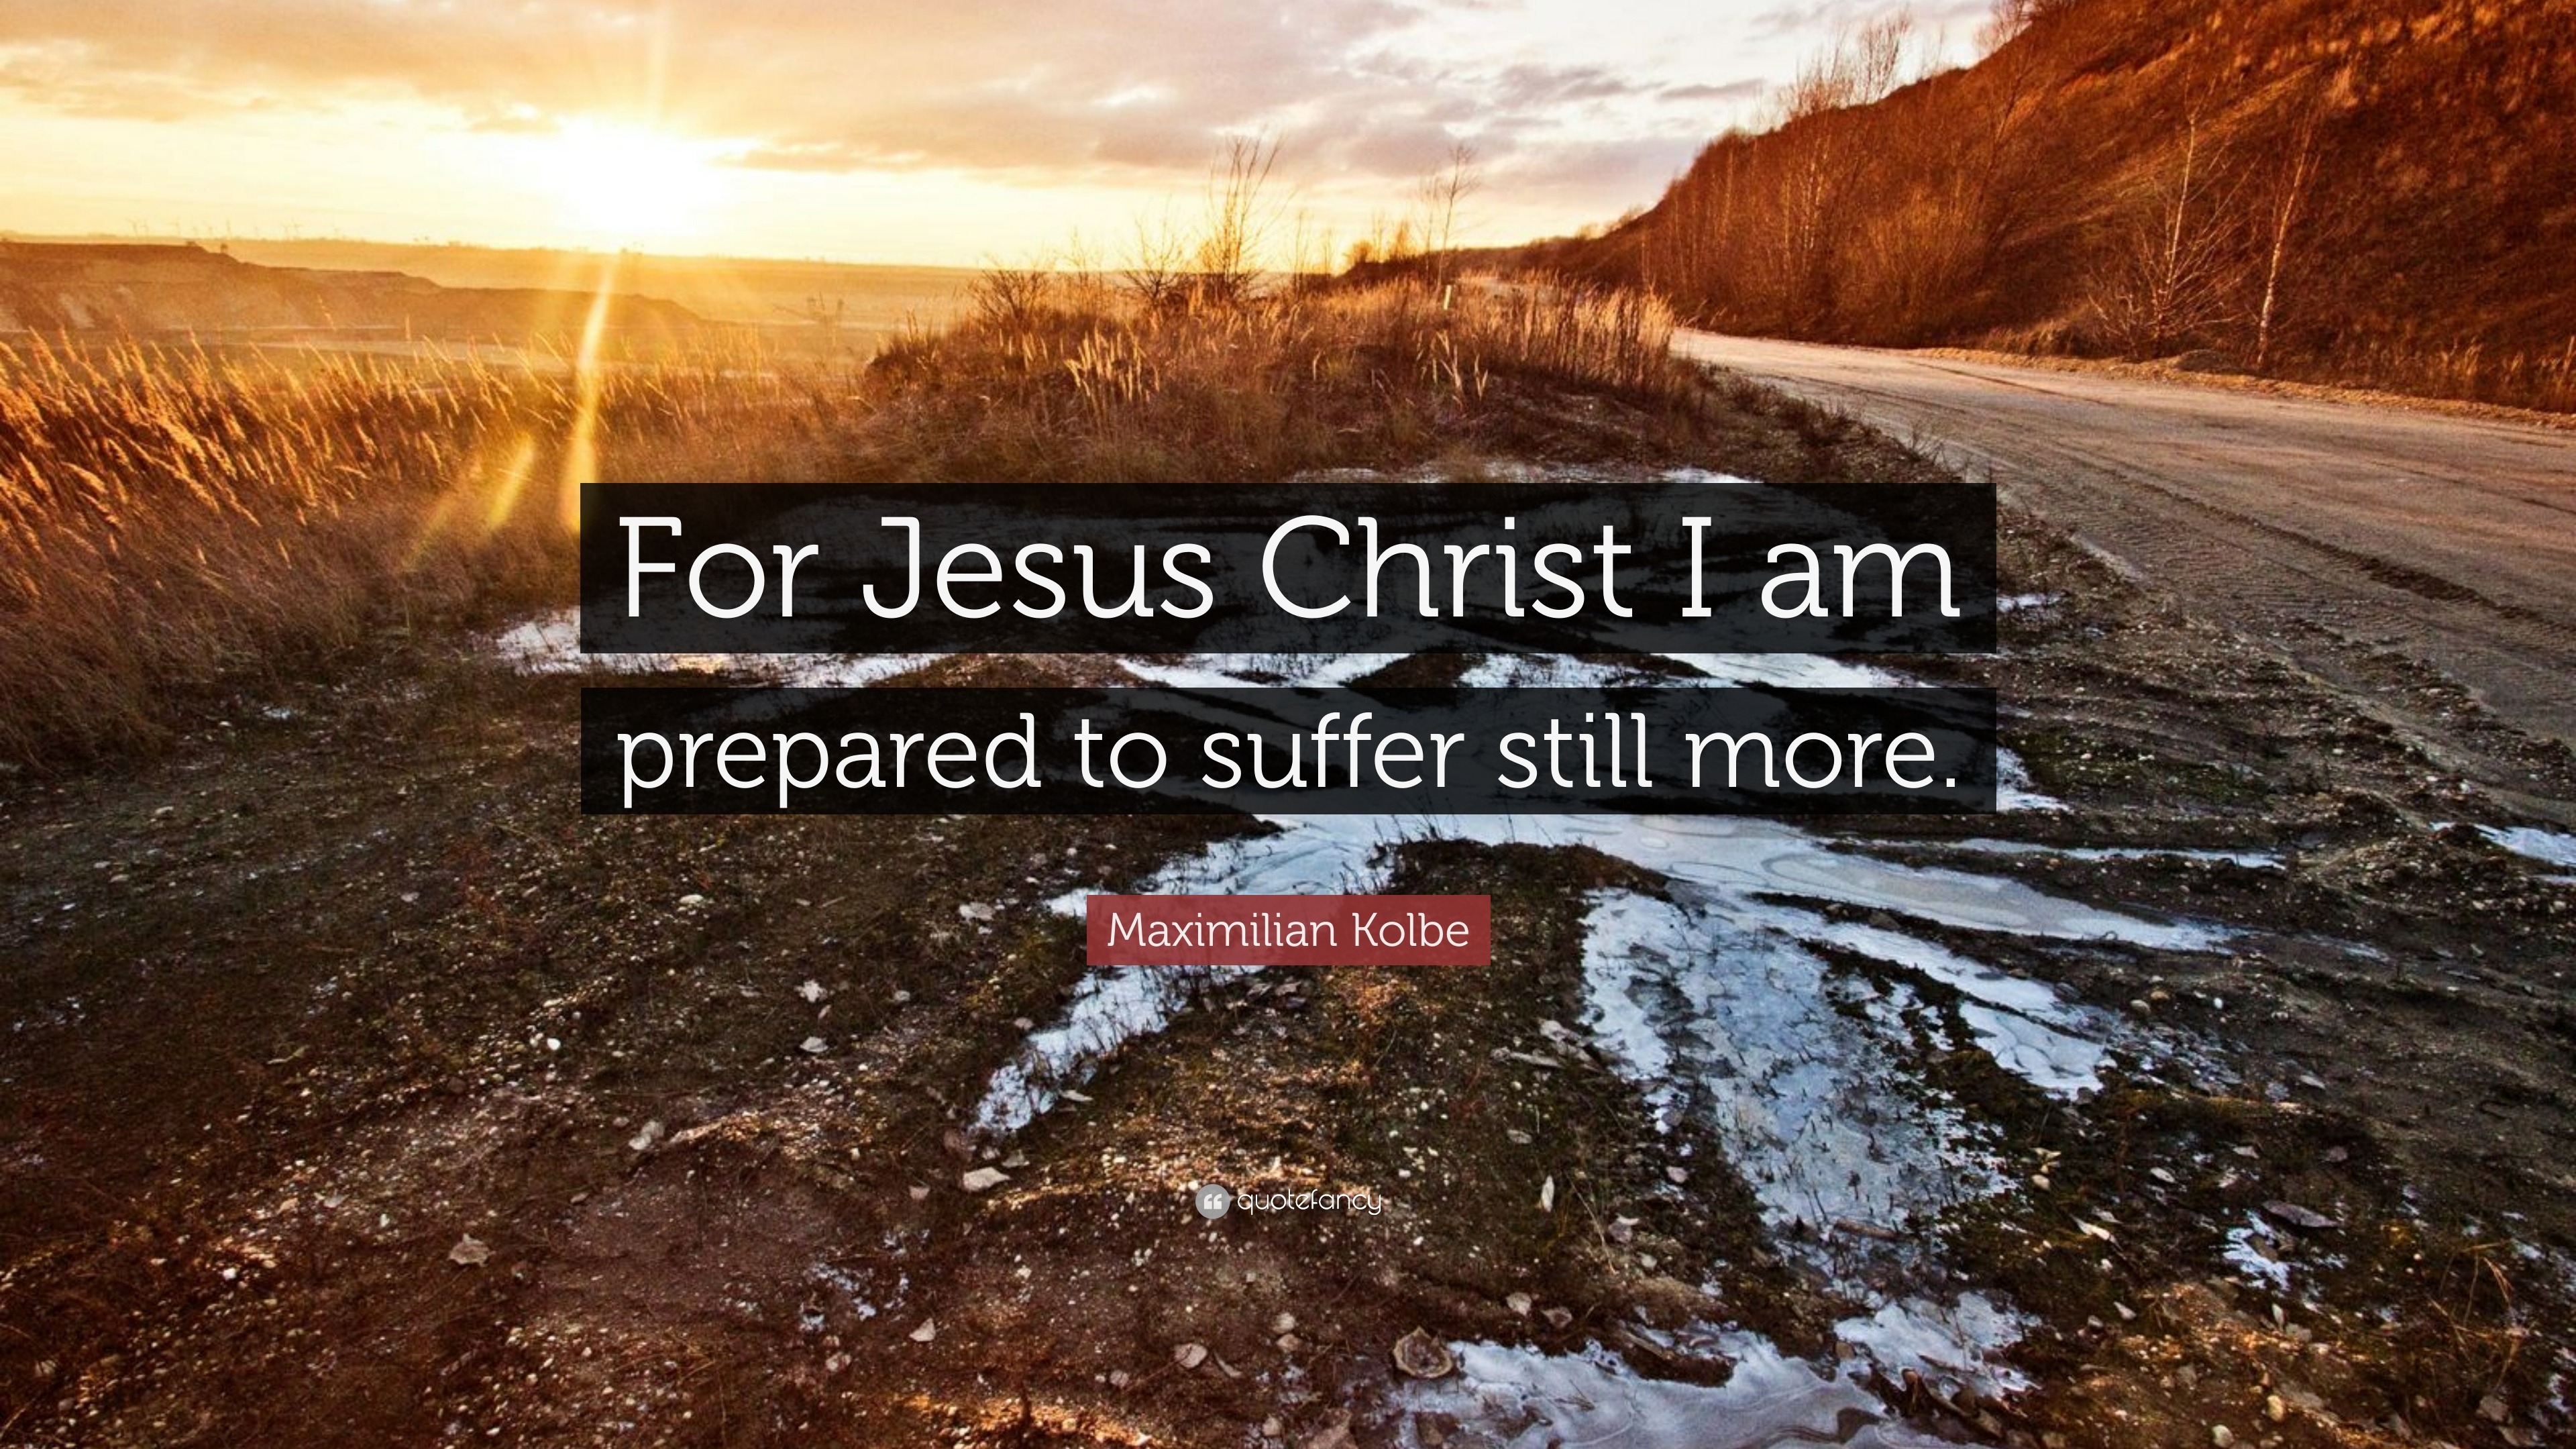 Maximilian Kolbe Quote: “For Jesus Christ I am prepared to suffer still